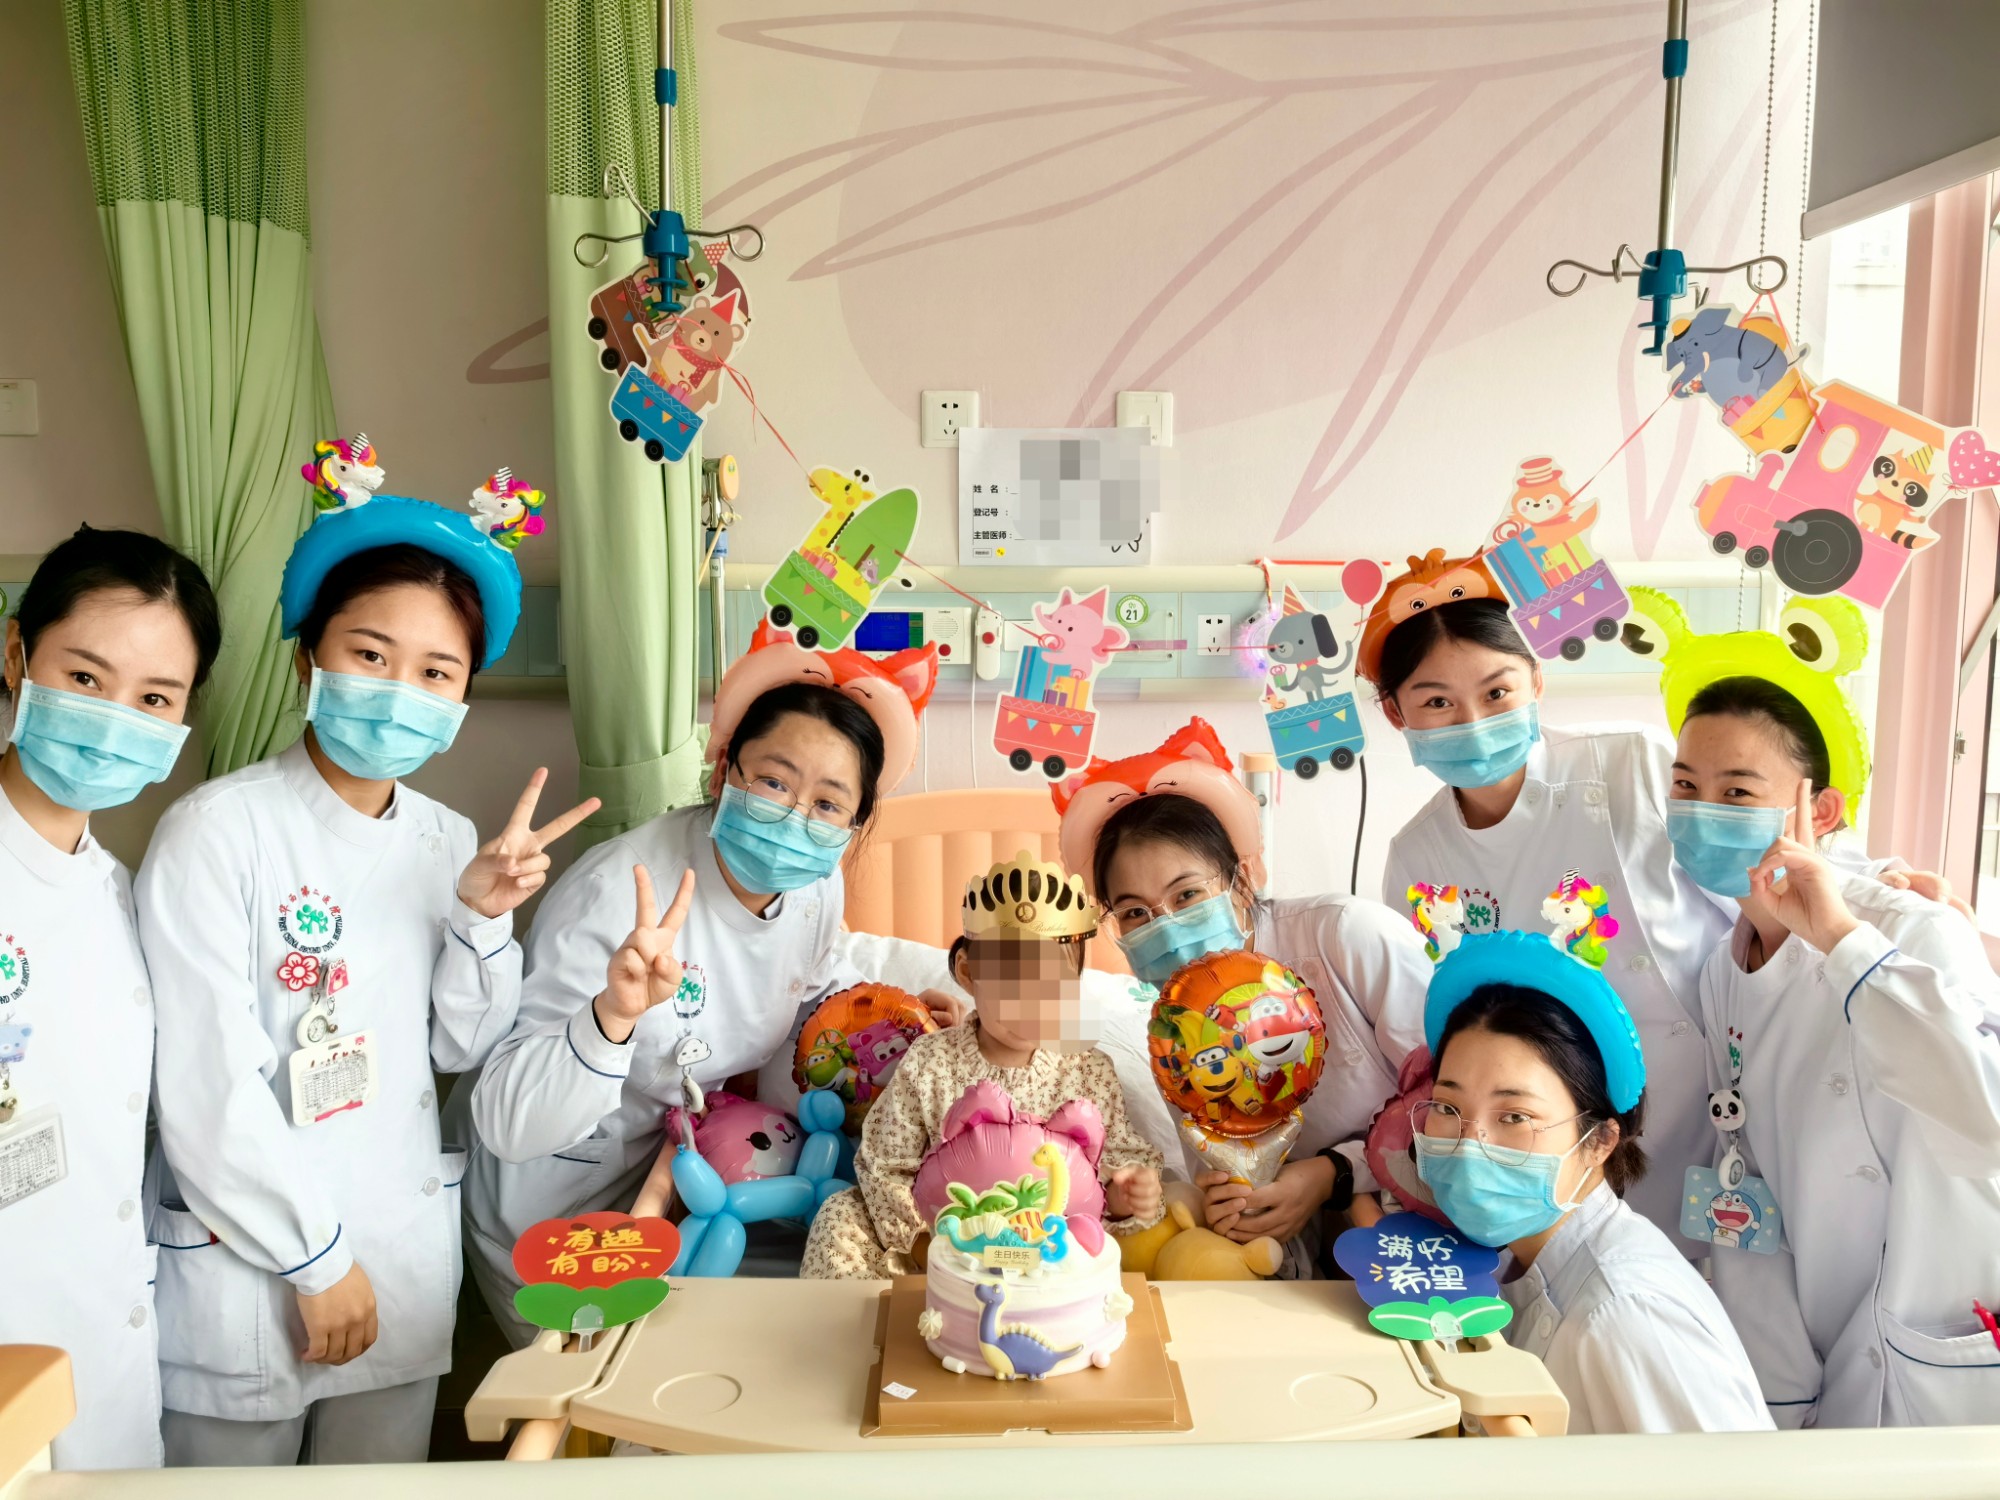 小儿外科医护人员为患者过生日送祝福